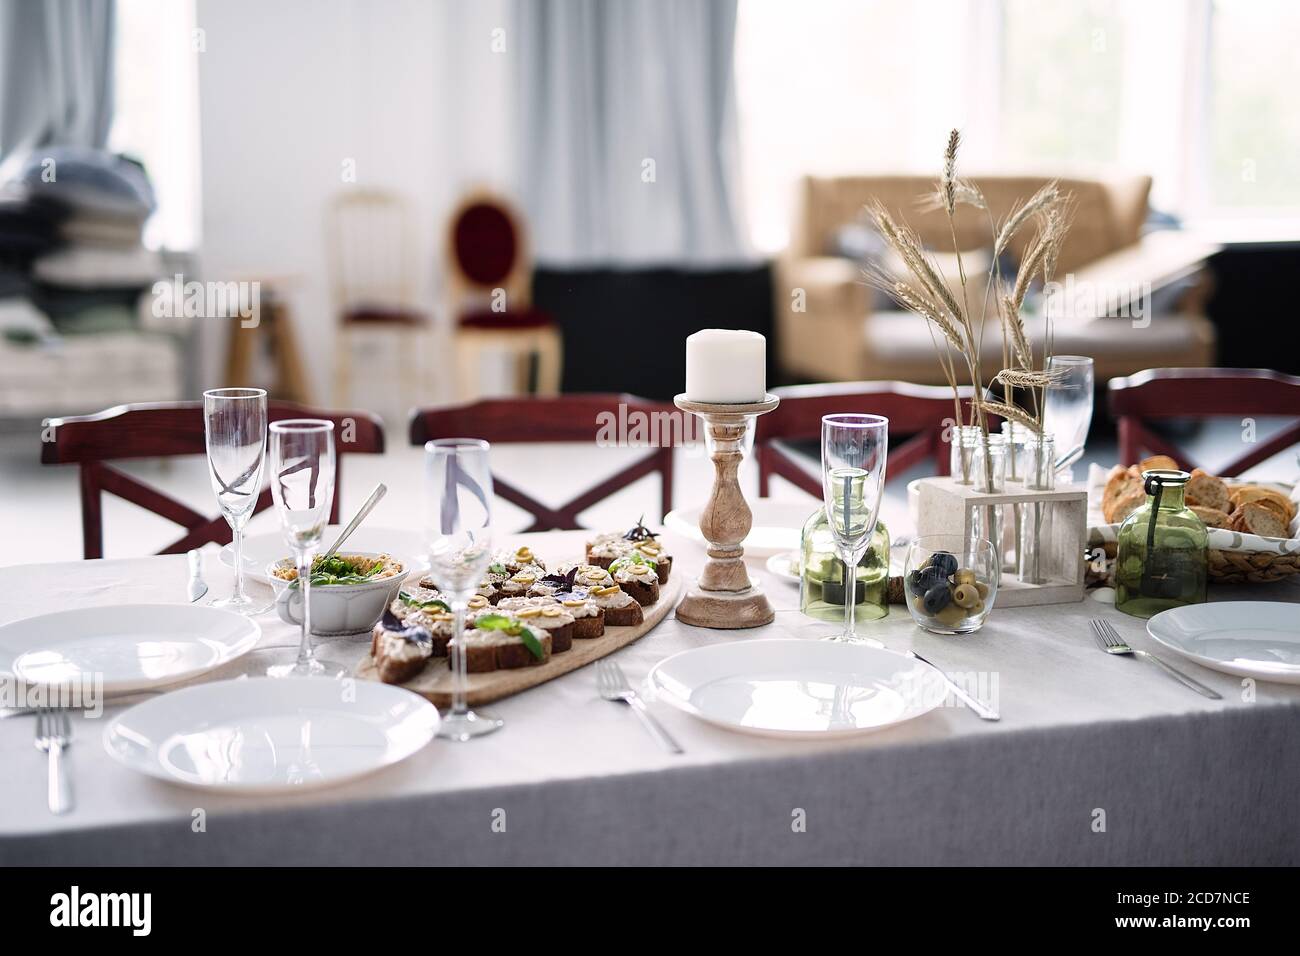 tavolo in stile rustico, spuntini leggeri, candele, piatti su tovaglia bianca Foto Stock